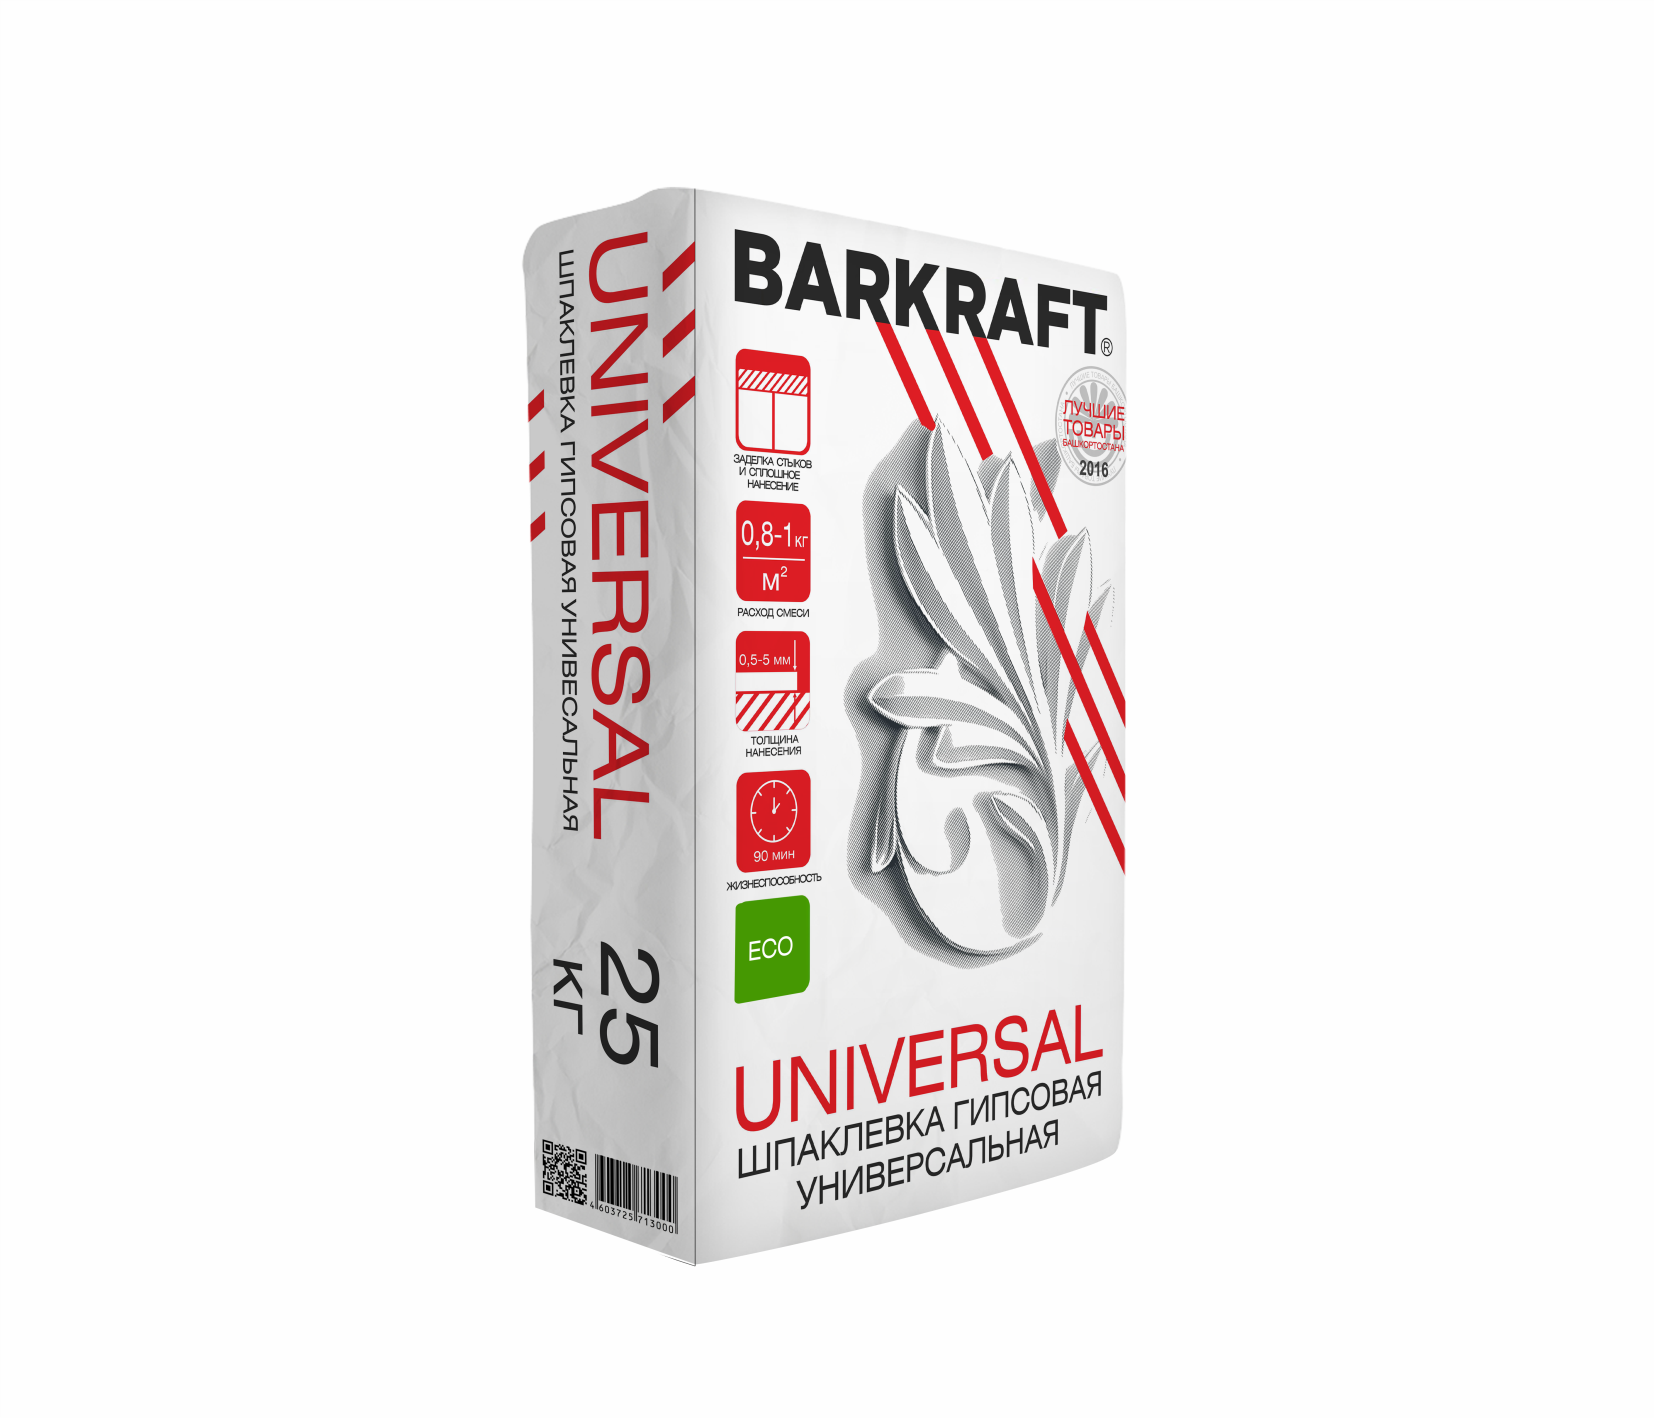 Шпаклевка BARKRAFT UNIVERSAL гипсовая Barkraft